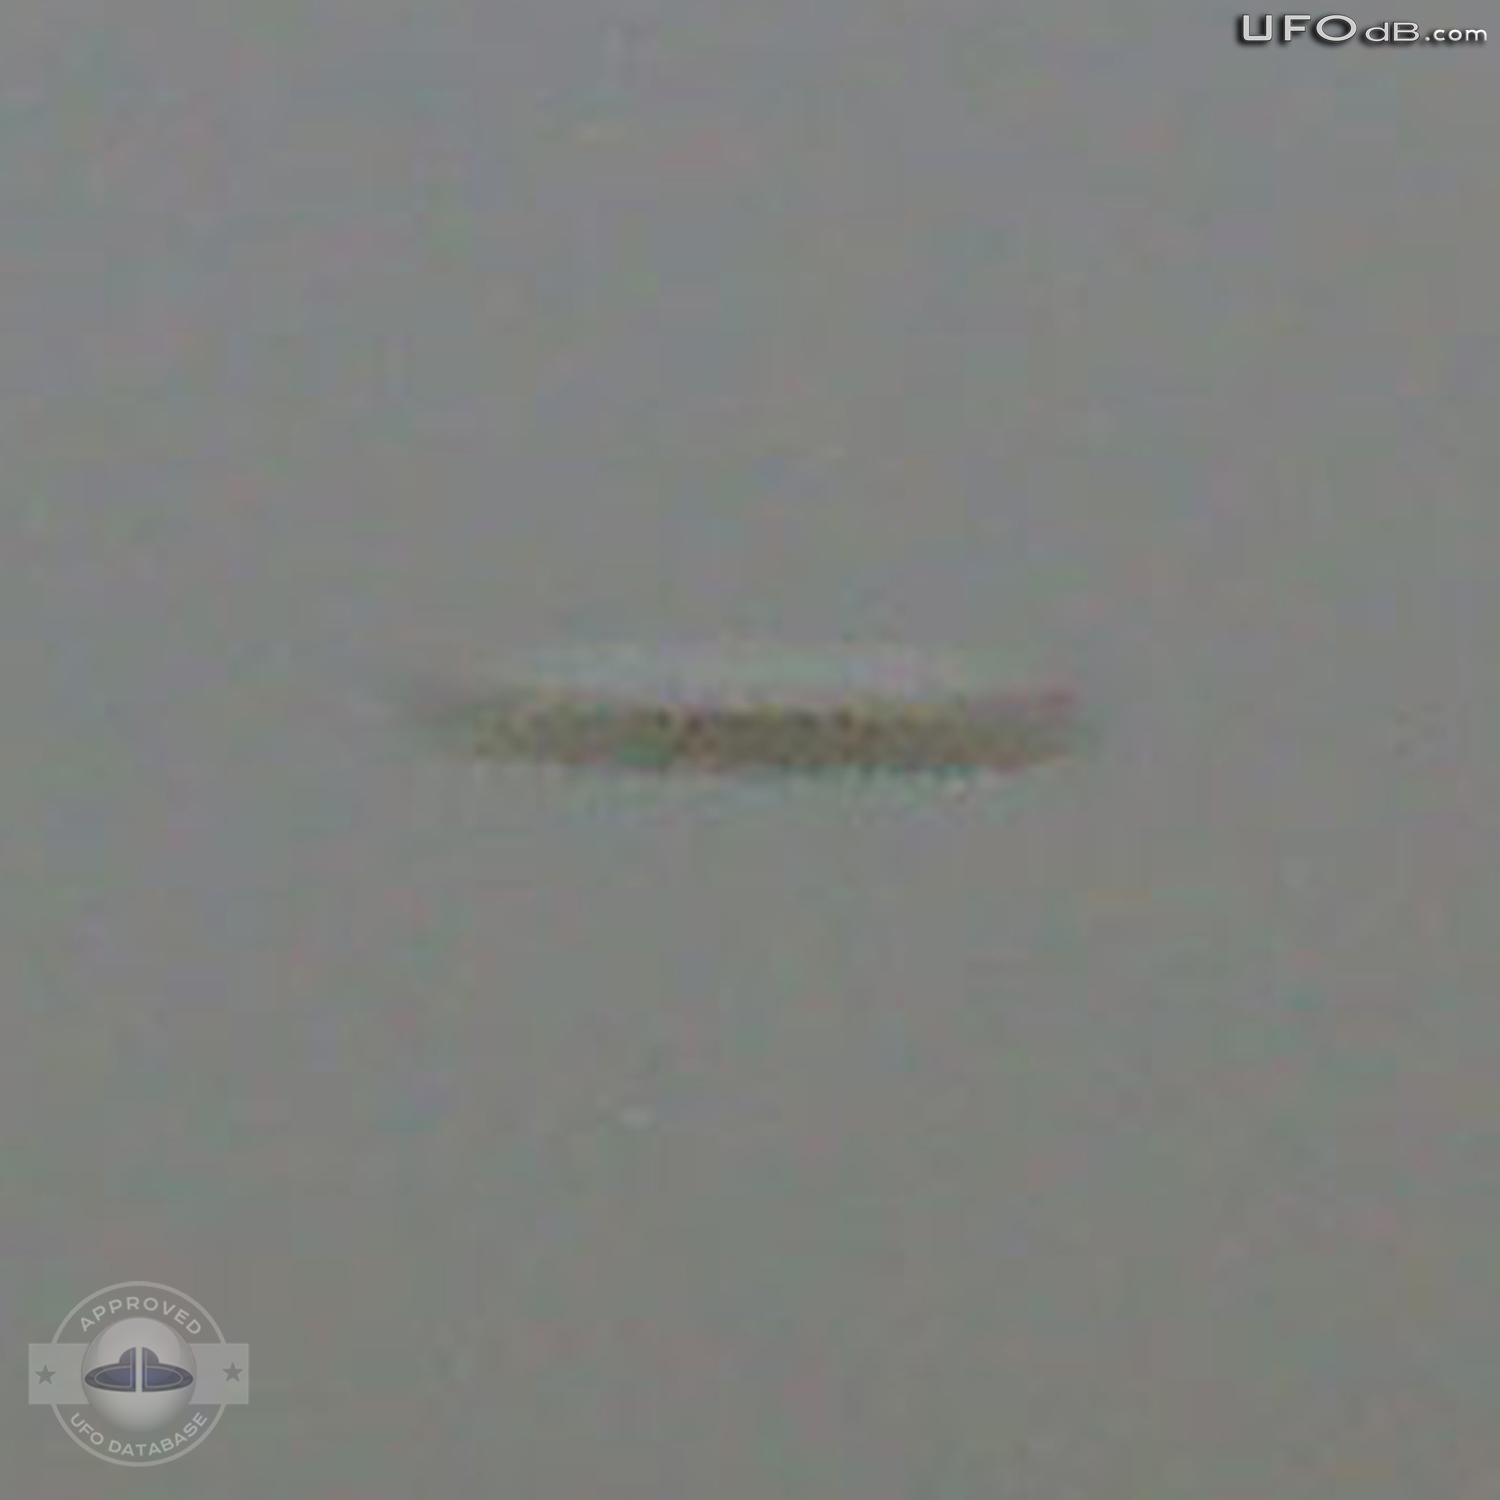 Very Clear UFO picture of Saucer in Sputnik, Croatia | November 2010 UFO Picture #335-4